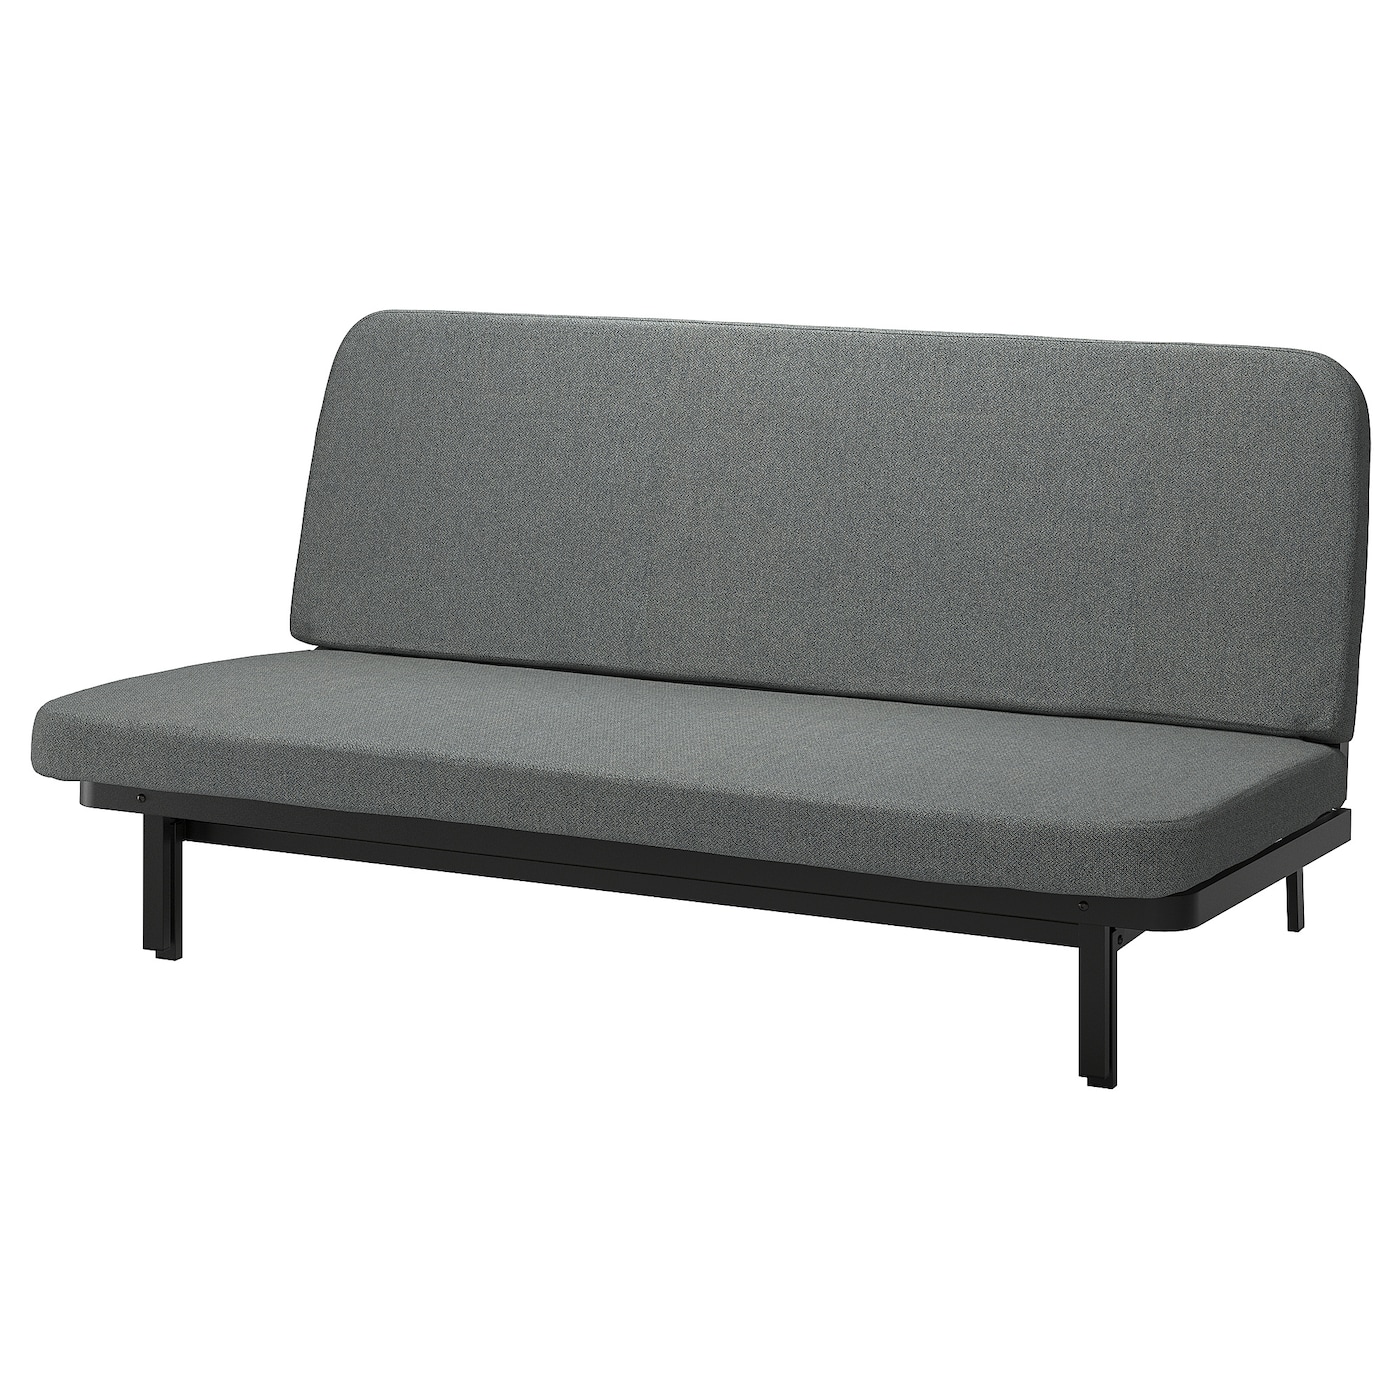 NYHAMN 3-местный диван-кровать, в комплекте пружинный матрас/Скартофта черный/светло-серый IKEA диван кровать малютка черный